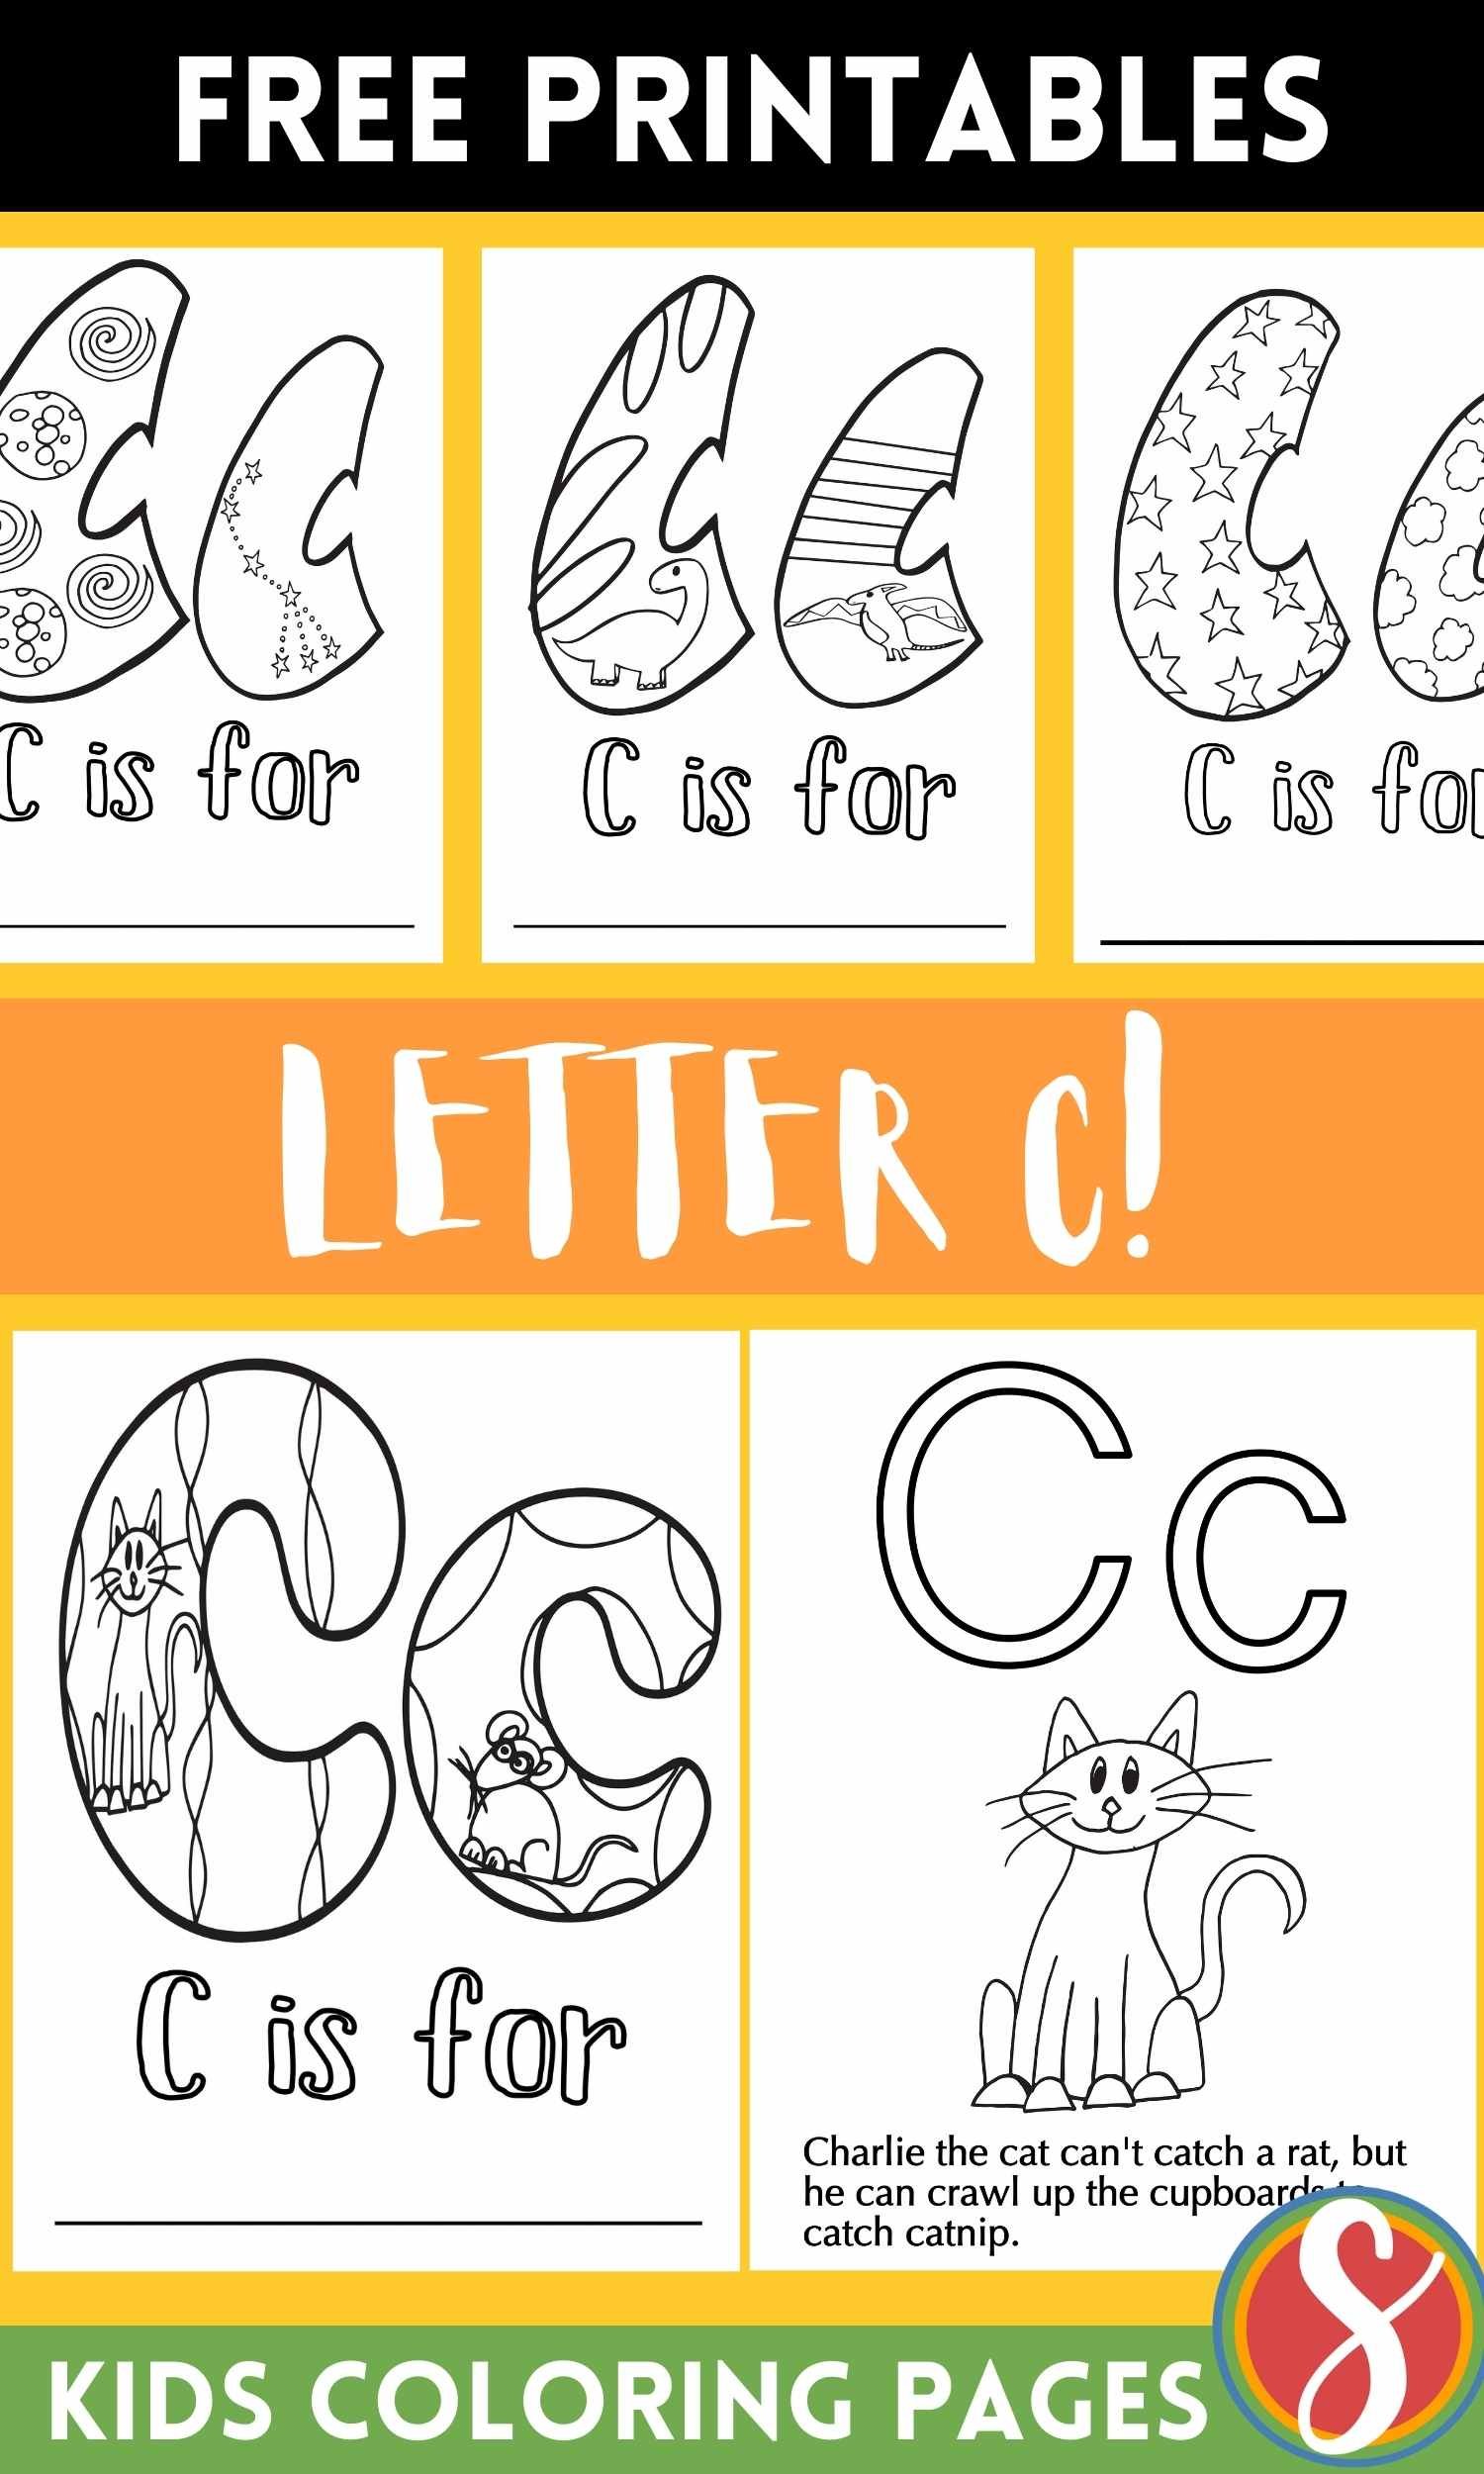 Free letter c coloring pages â stevie doodles